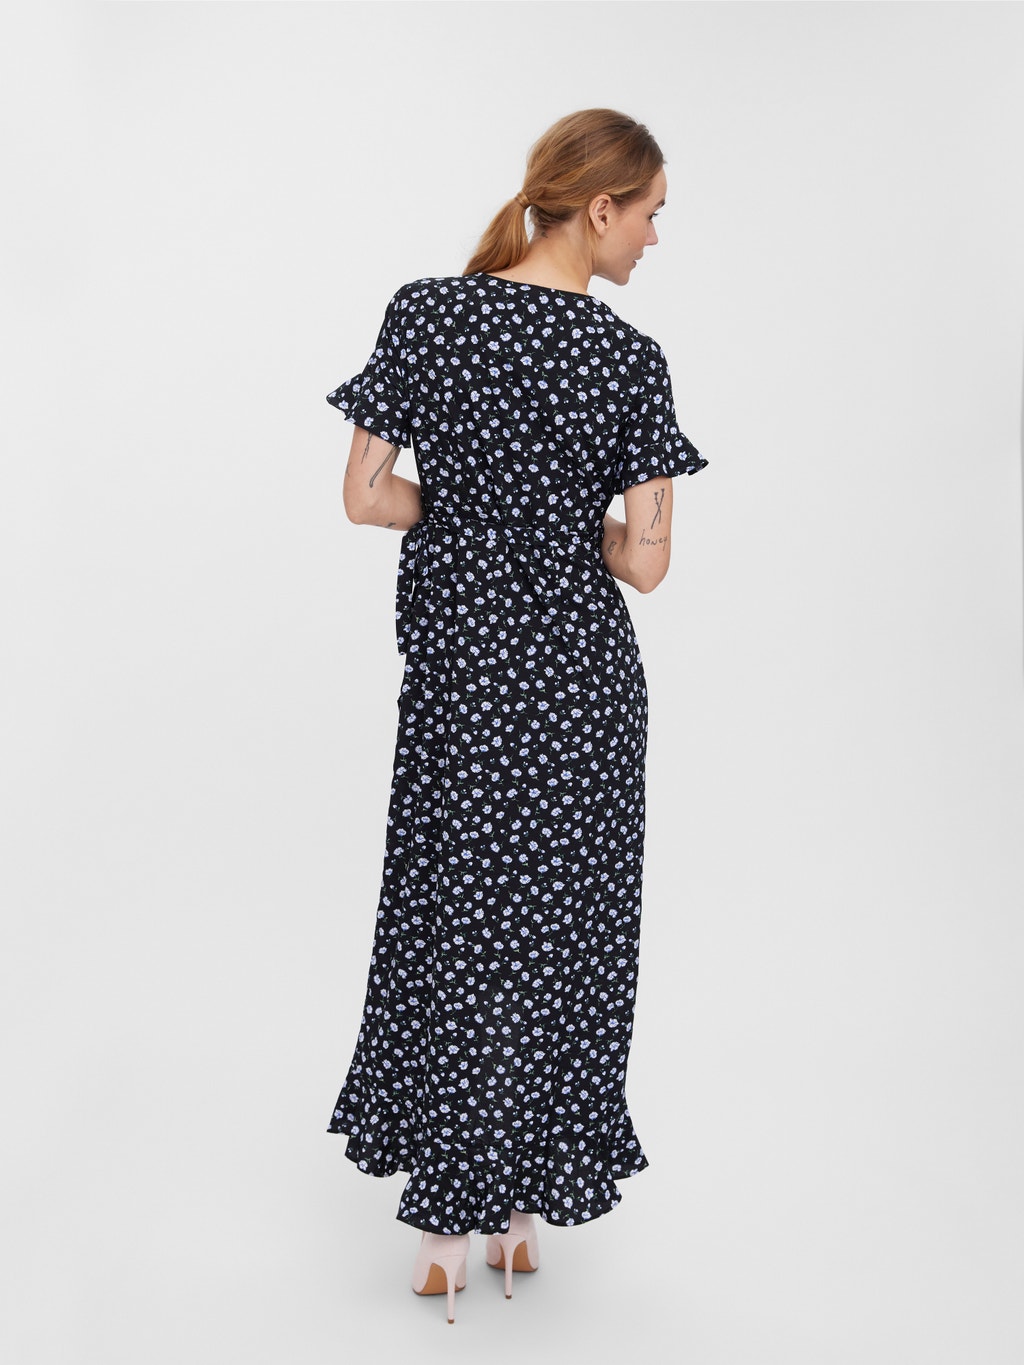 Beeldhouwer inval Hoe dan ook Lange jurk | Zwart | Vero Moda®